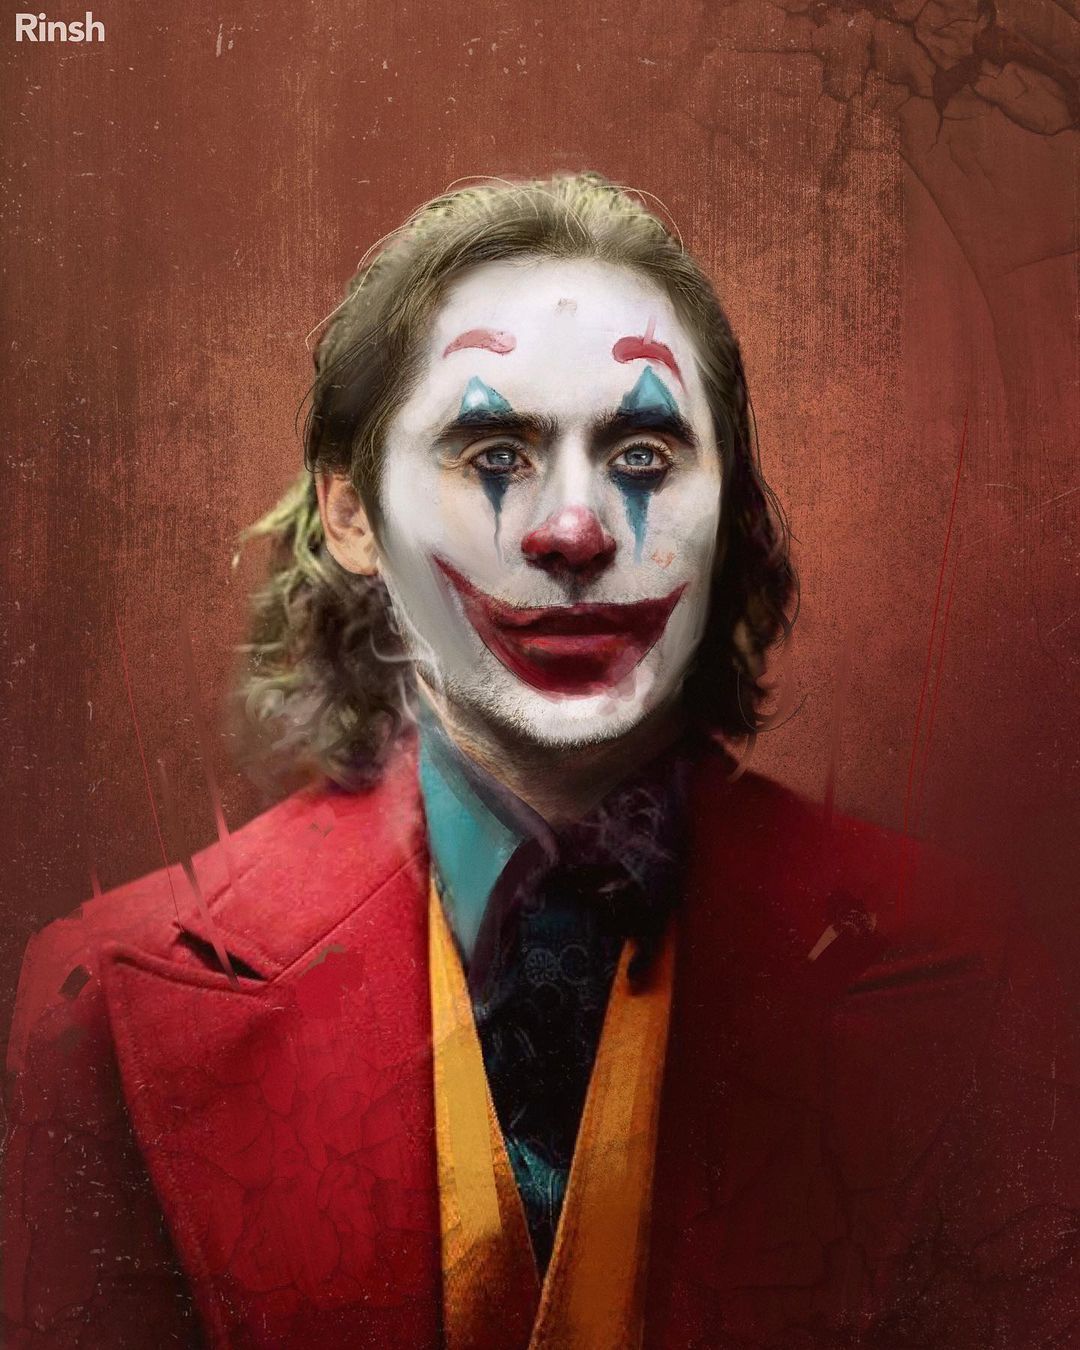 Joker Art Features Jared Leto in Joaquin Phoenix’s Makeup